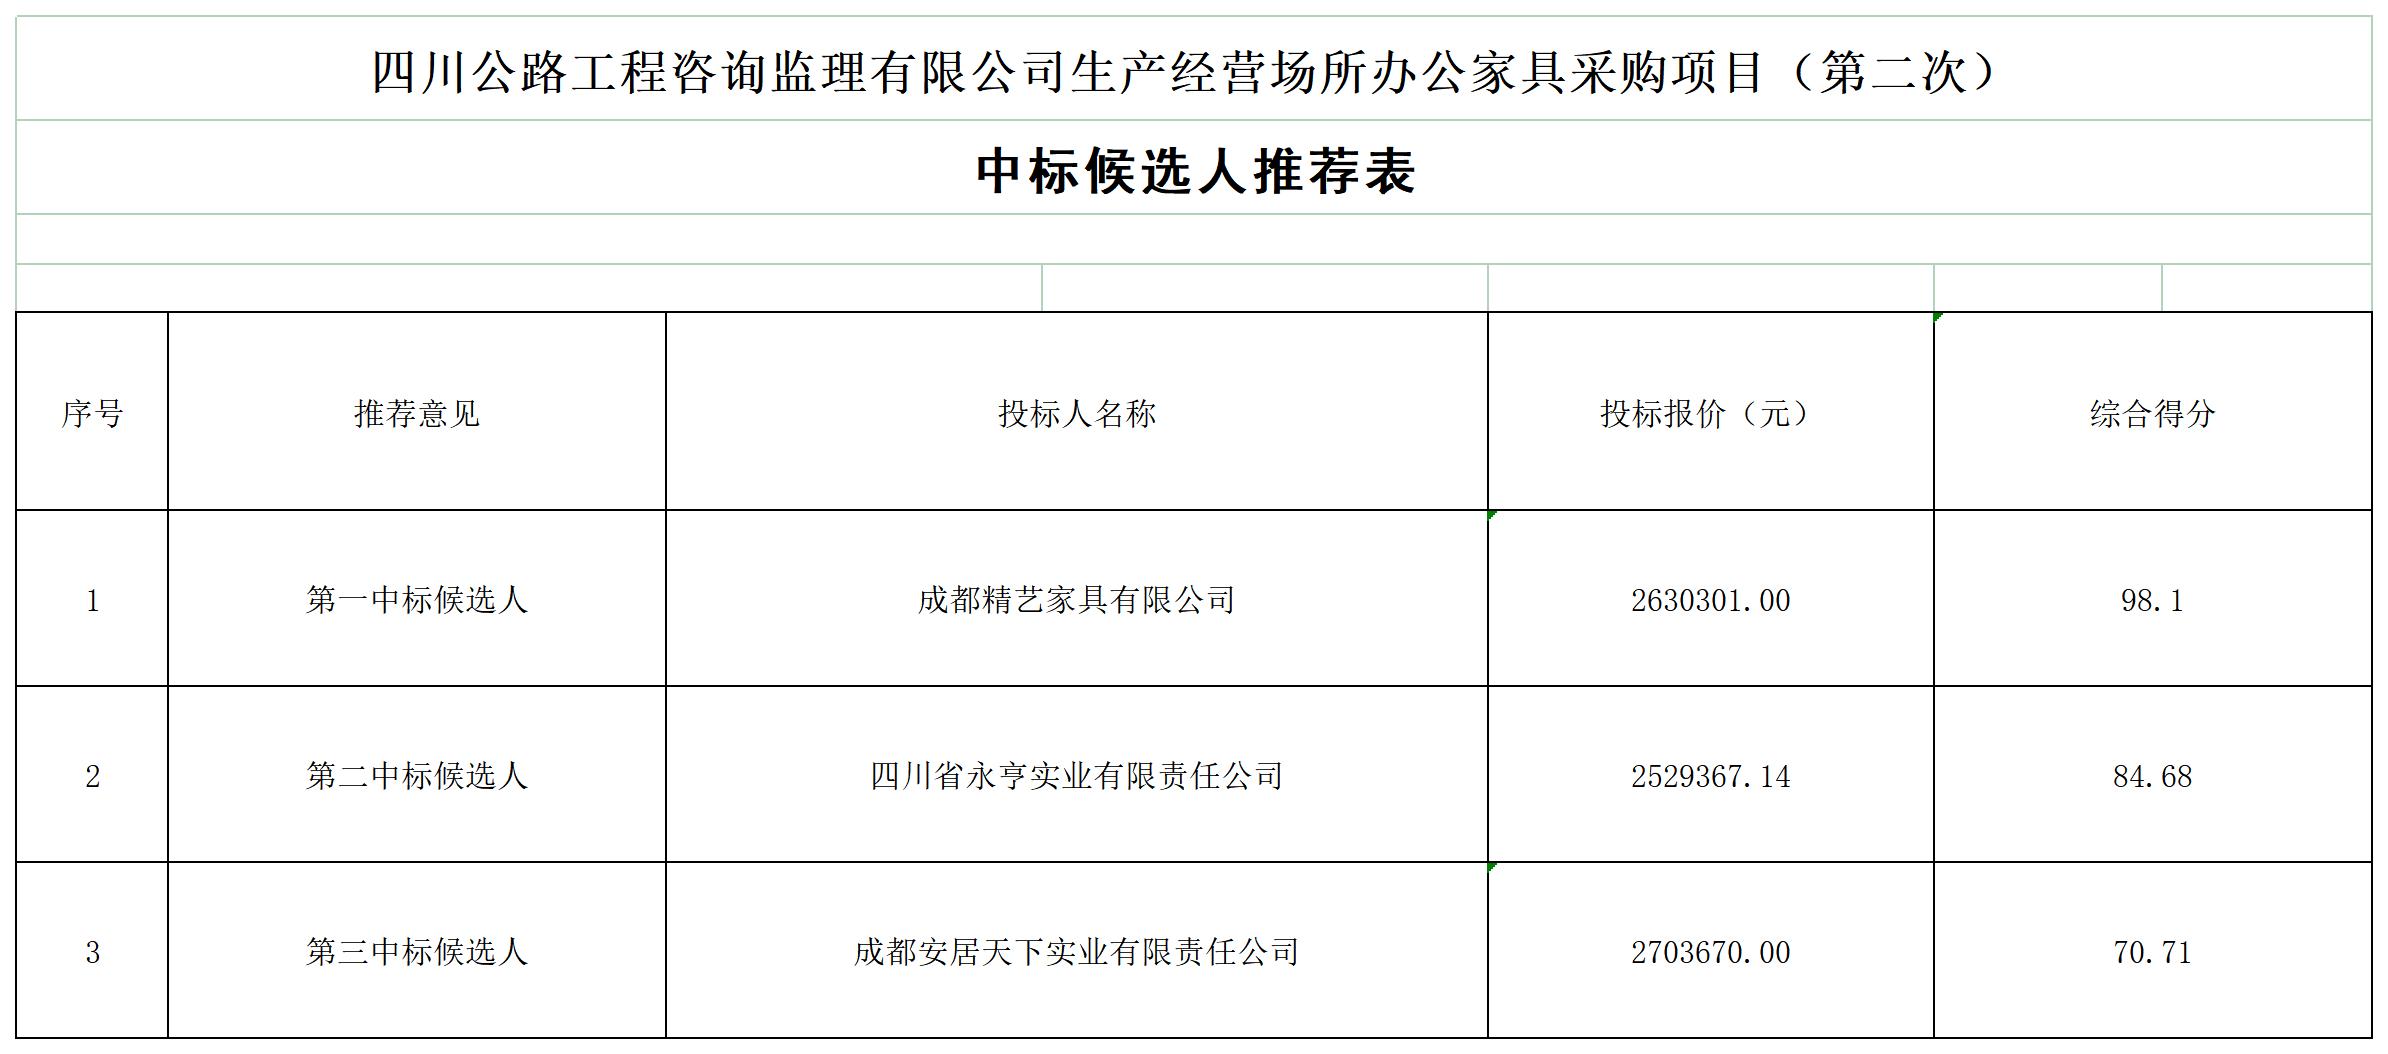 ld乐动·体育（中国）官方网站生产经营场所办公家具采购项目（第二次）中标候选人及无效投标文件原因_A1G8.jpg